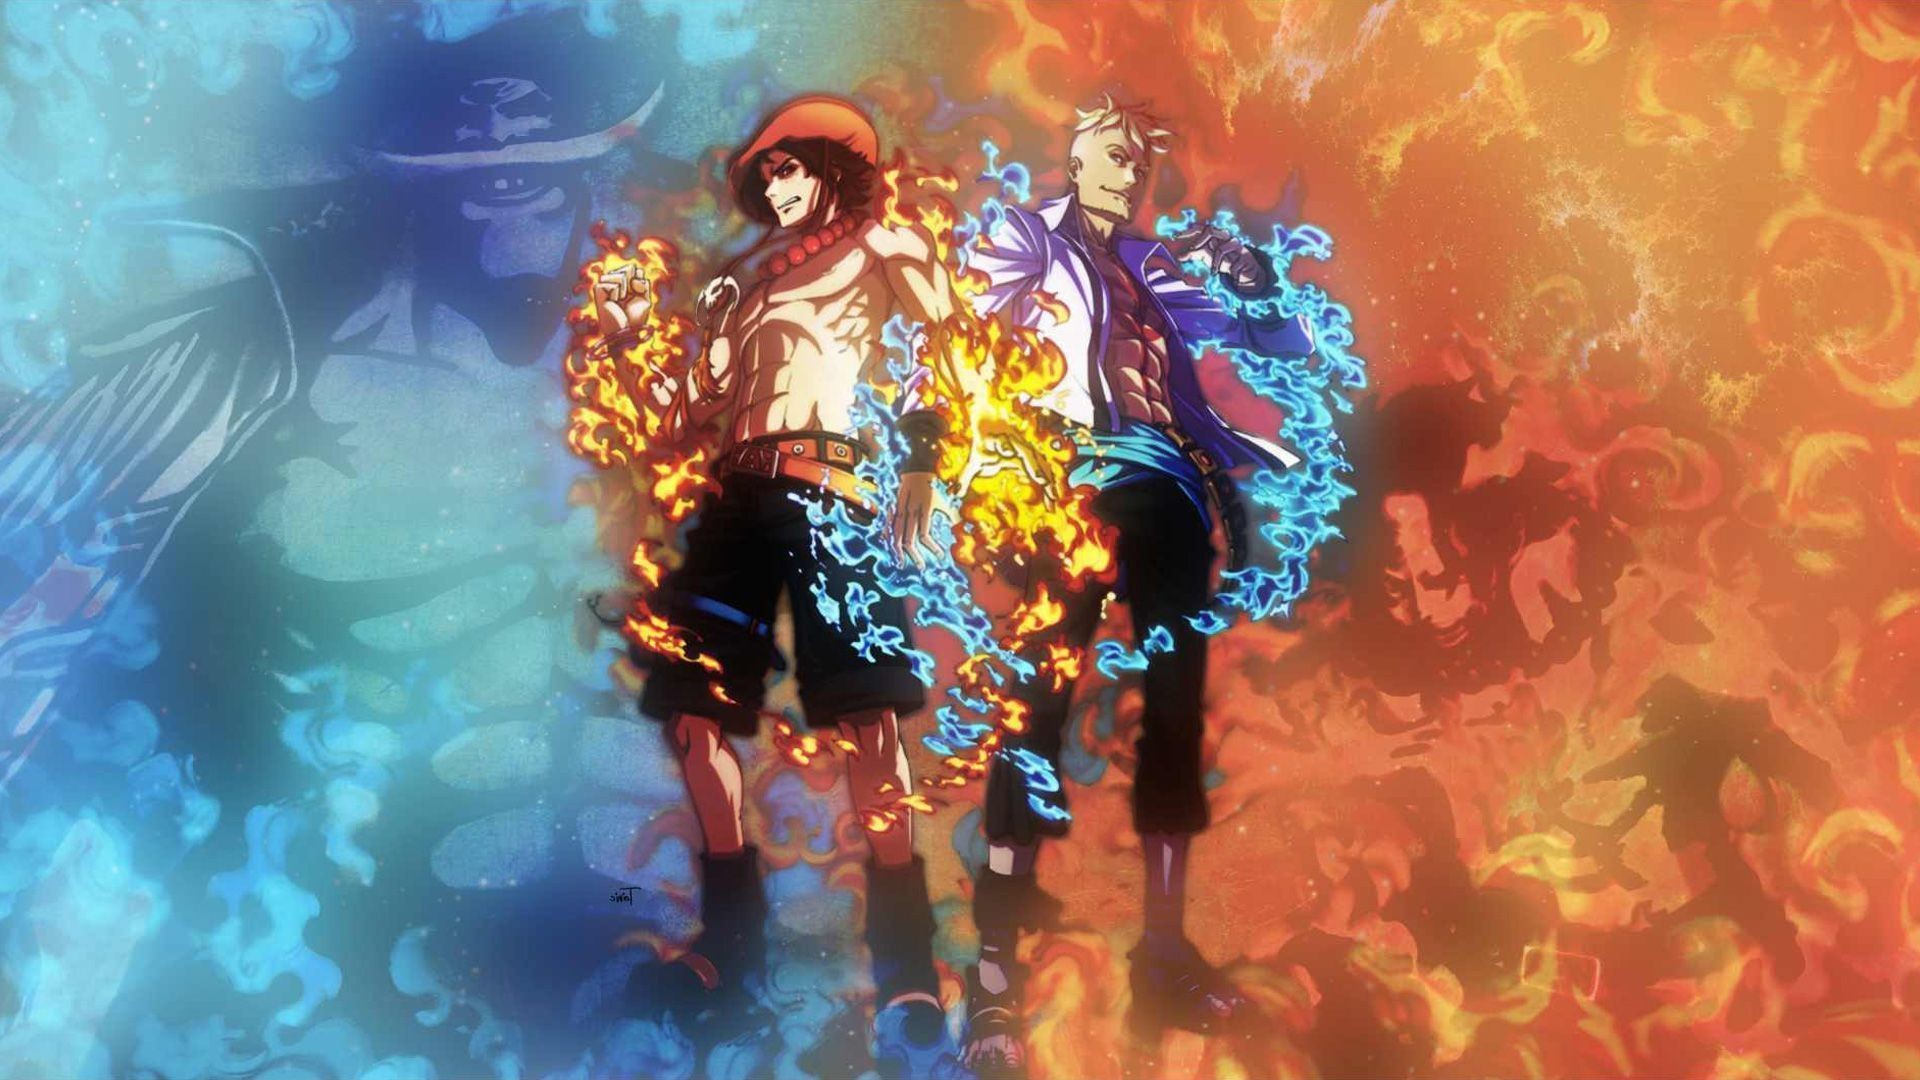 Với bộ sưu tập hình nền One Piece Luffy and Ace, bạn sẽ được tận hưởng những khoảnh khắc cảm động giữa hai anh em đã làm nên câu chuyện đầy bất ngờ và xúc động cho khán giả.